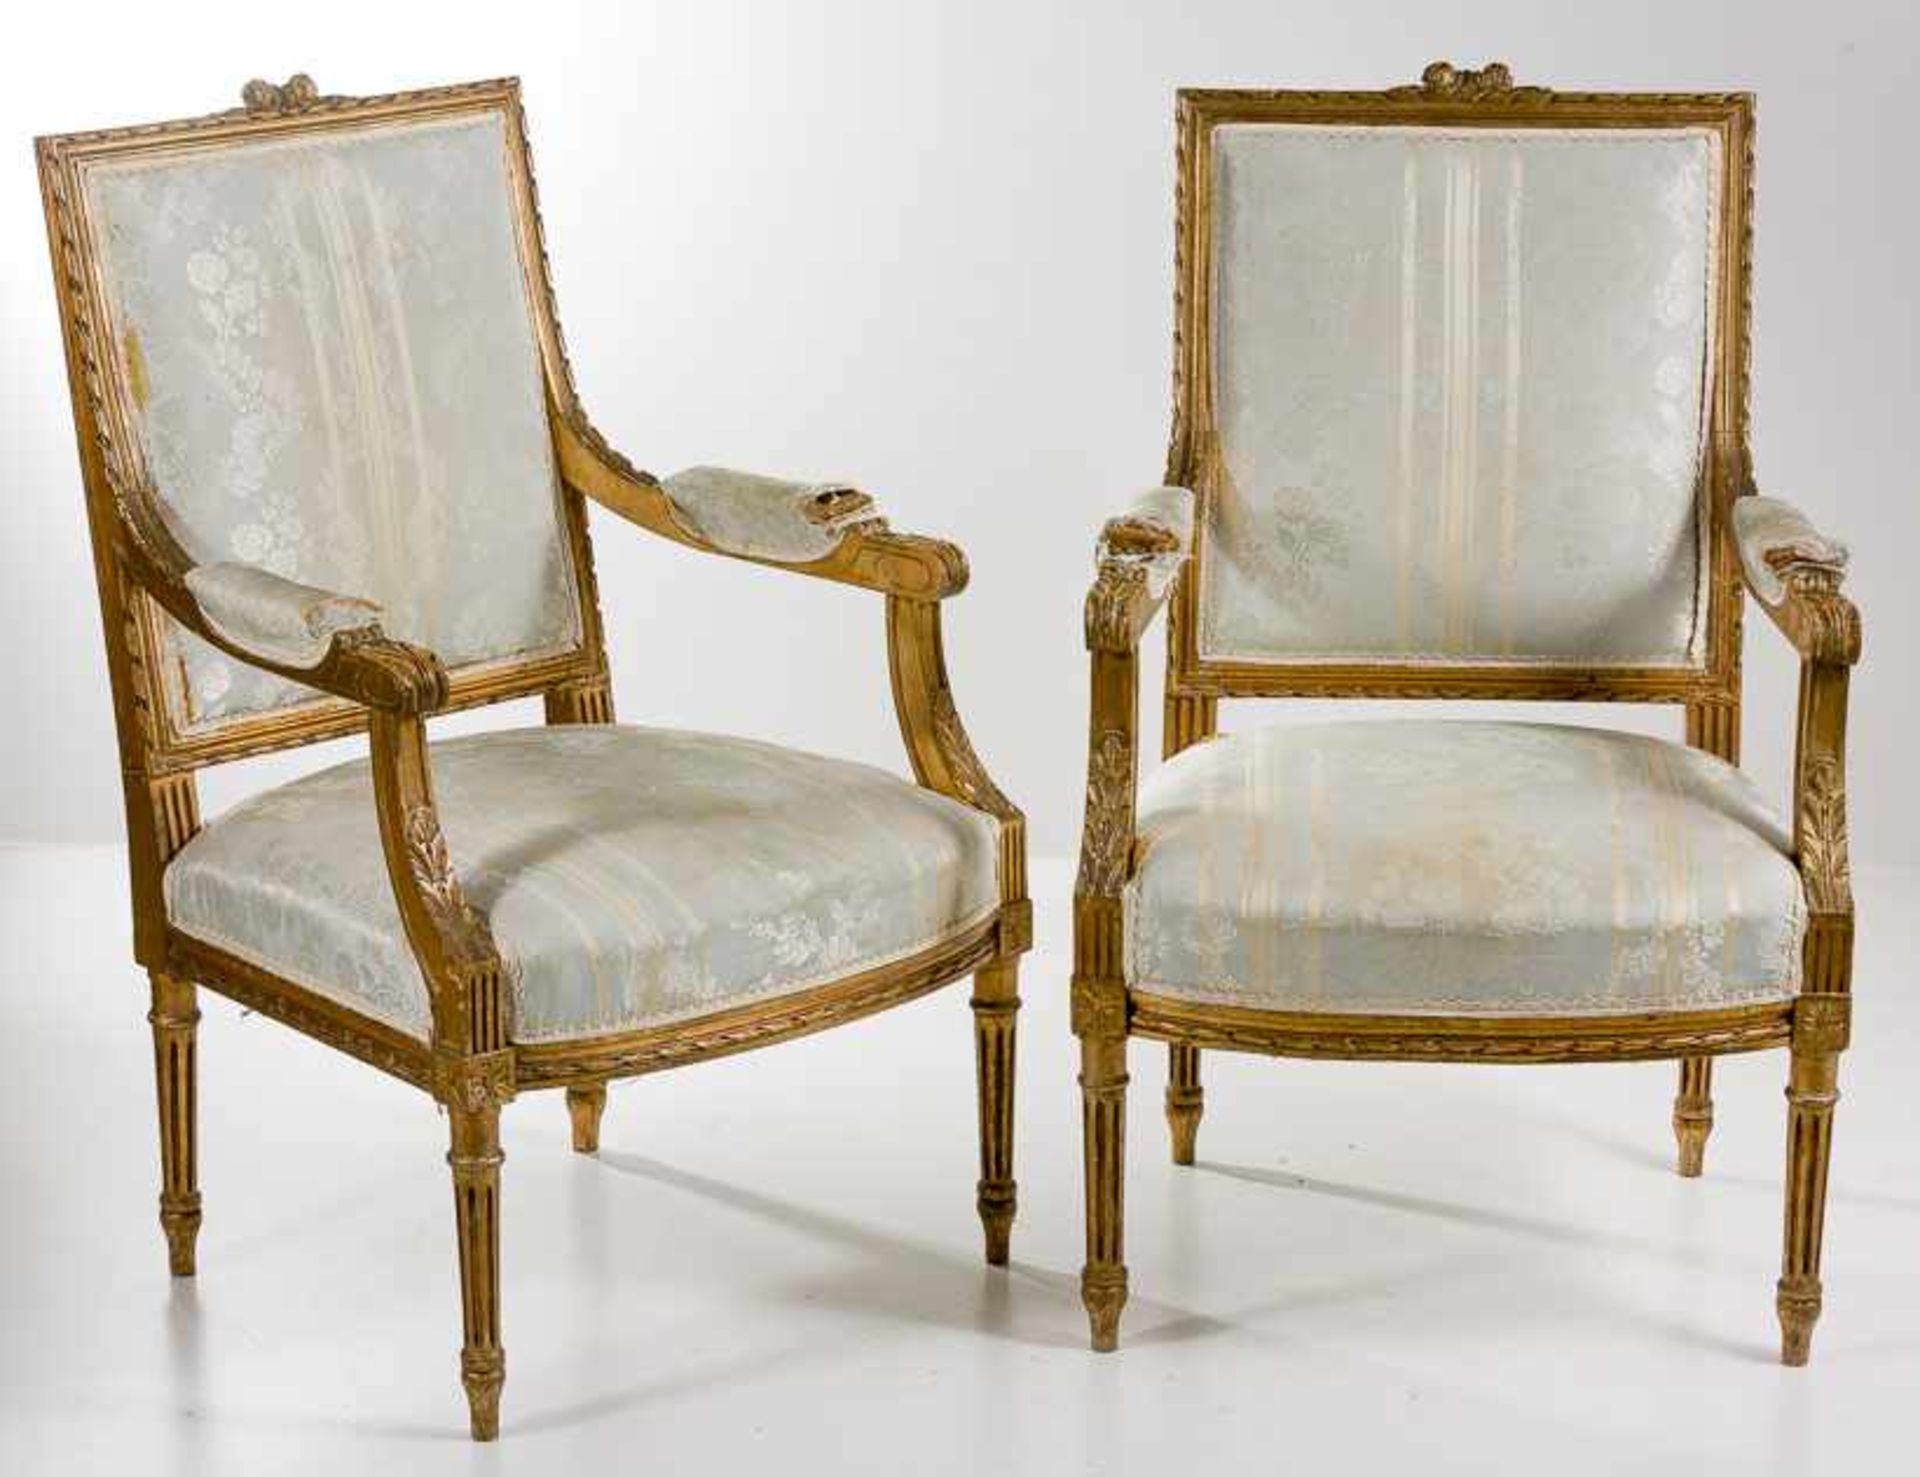 Zwei Armlehnstühle im Louis-XVI-Stil. Holz, vergoldet. Hohe rechteckige Rückenlehne mit